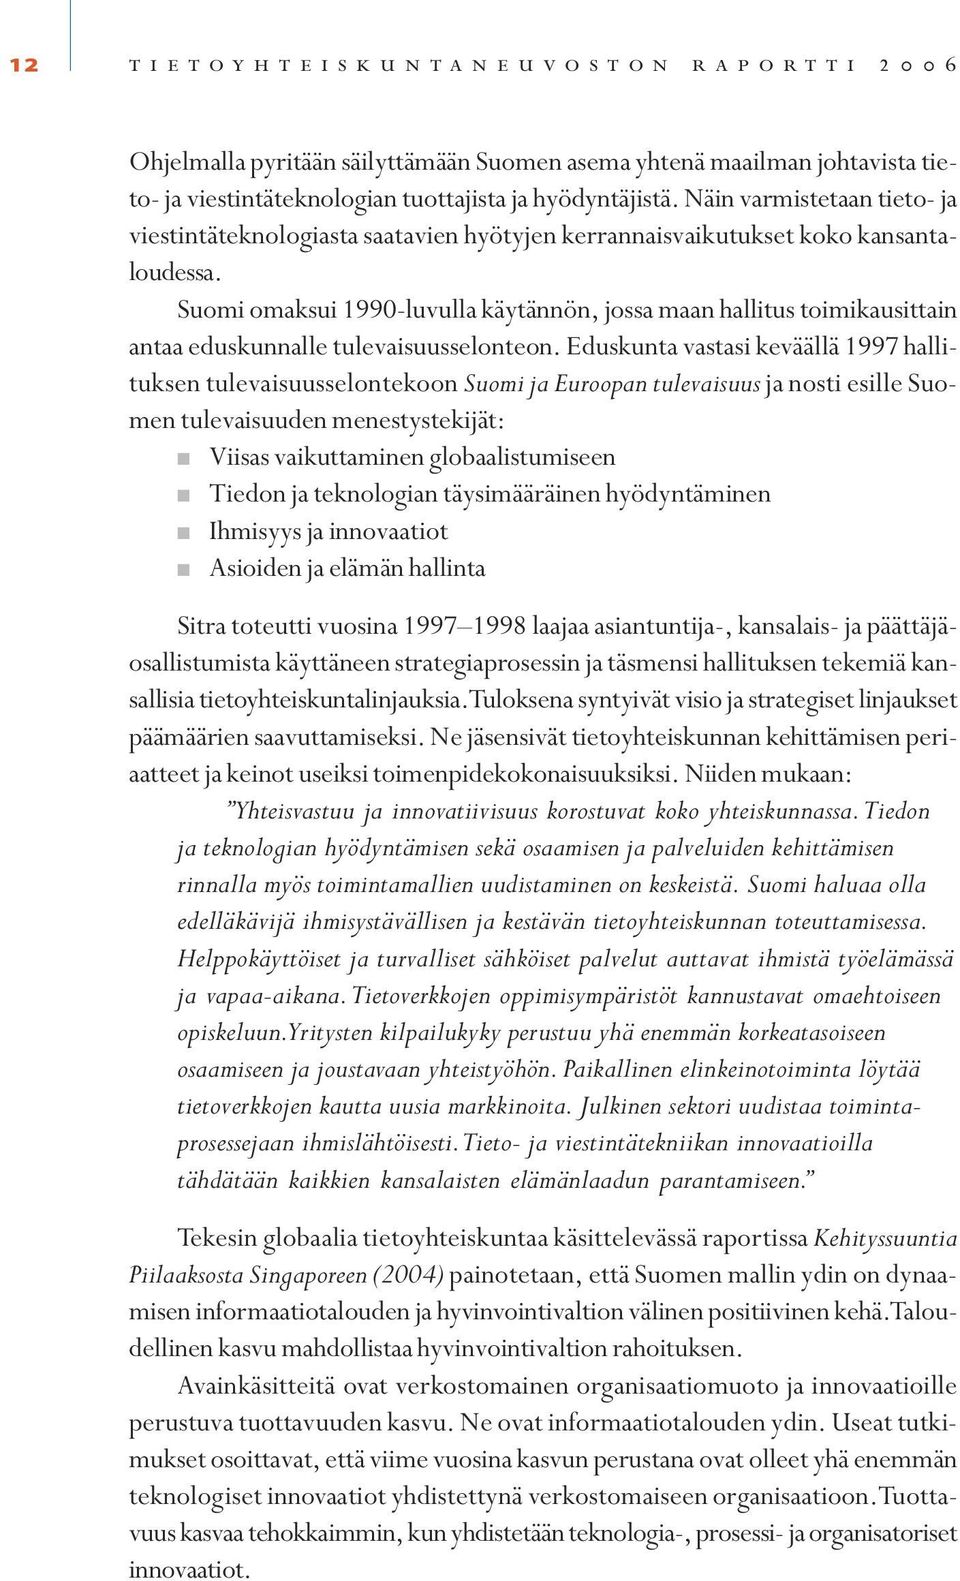 Suomi omaksui 1990-luvulla käytännön, jossa maan hallitus toimikausittain antaa eduskunnalle tulevaisuusselonteon.